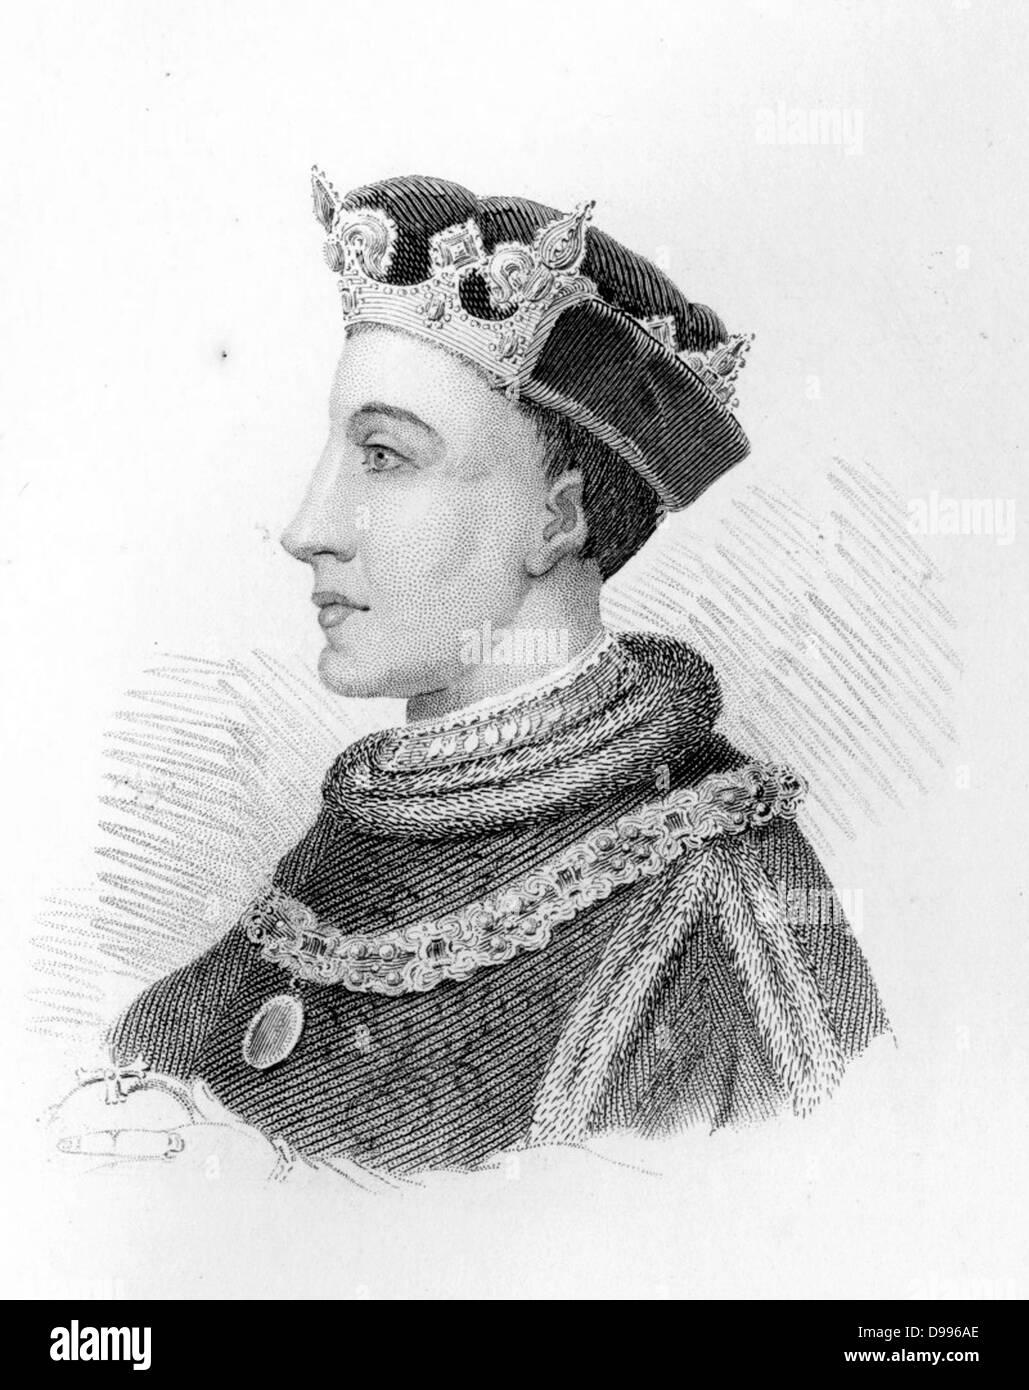 Henry V (16. September 1386-31. August 1422 [1] [2]) war König von England von 1413 bis zu seinem Tod im Alter von 35 Jahren 1422. Er war der zweite englische Monarchen, der aus dem Hause Lancaster kam. Stockfoto